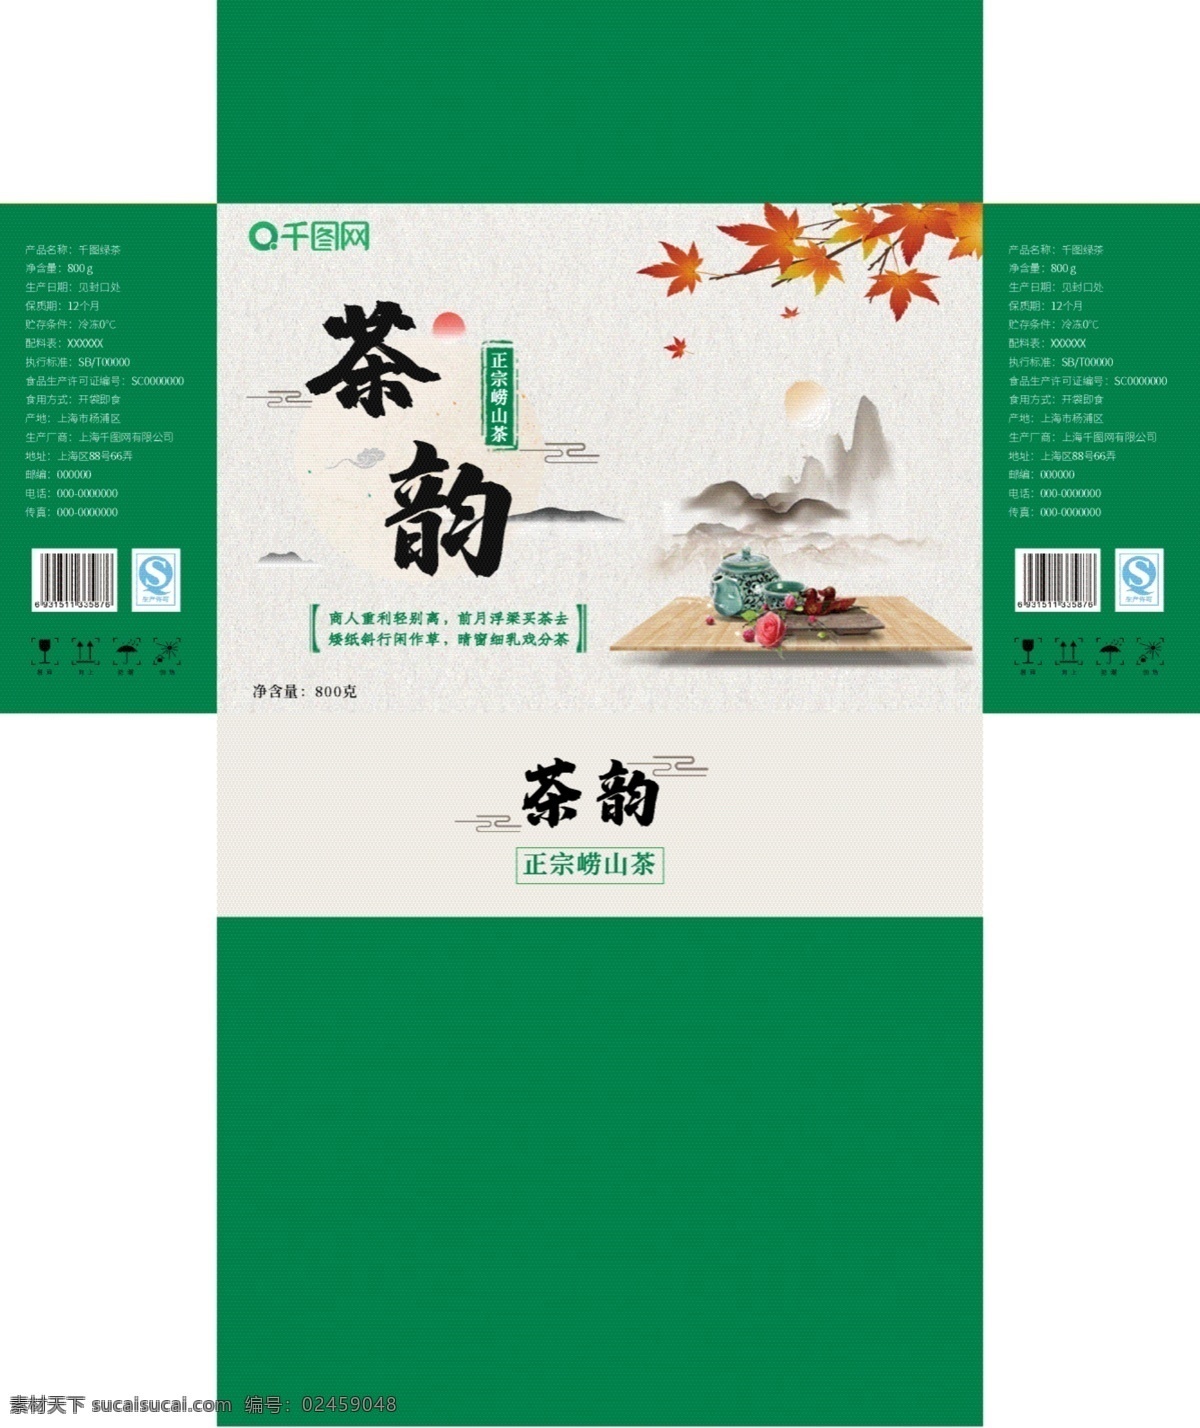 原创 绿 茶叶 礼品盒 包装设计 中国 风 水墨 崂山 茶 礼品包装 绿茶包装 崂山茶礼盒 茶叶包装 中国风包装 礼盒包装 绿茶 包装 茶包装